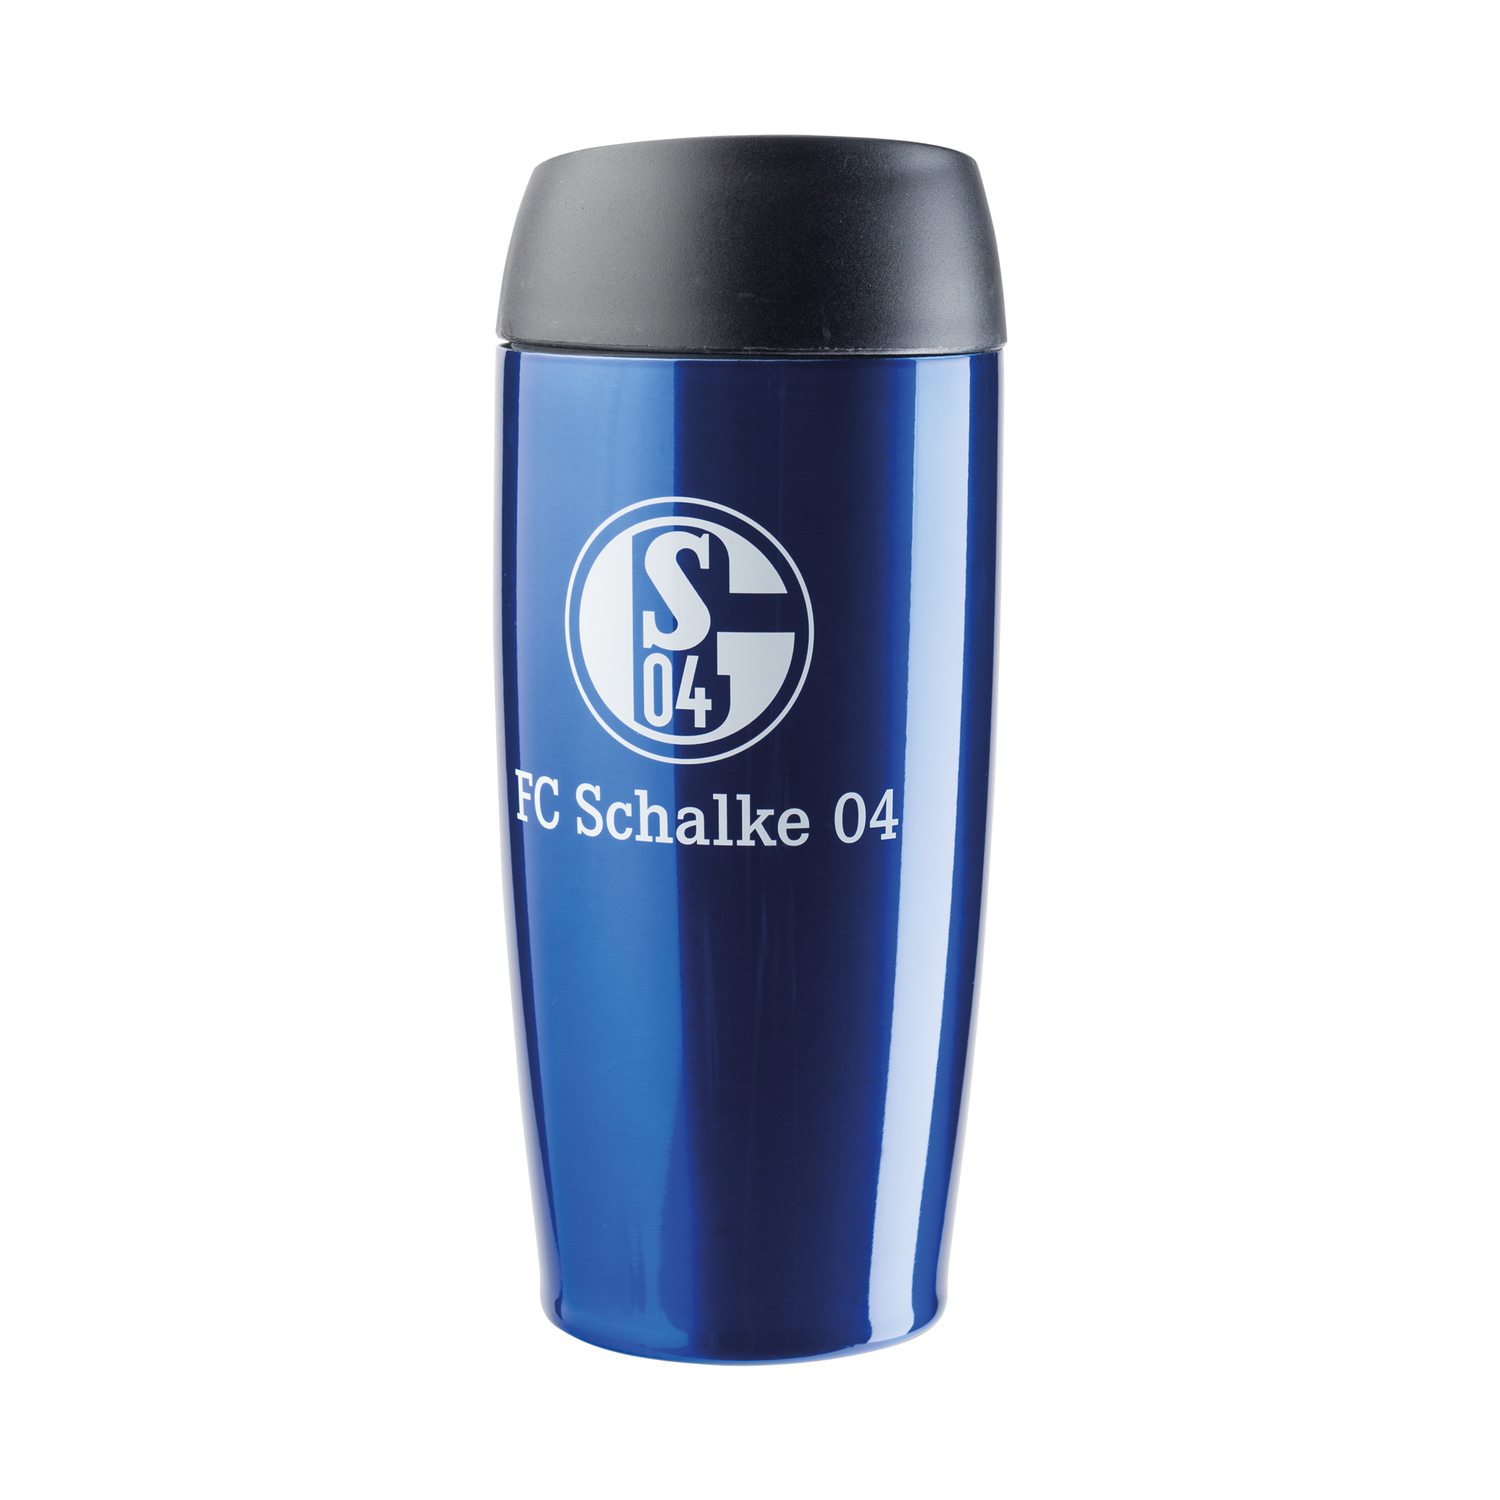 FC Schalke 04 Thermobecher, blau, 0,4 Liter